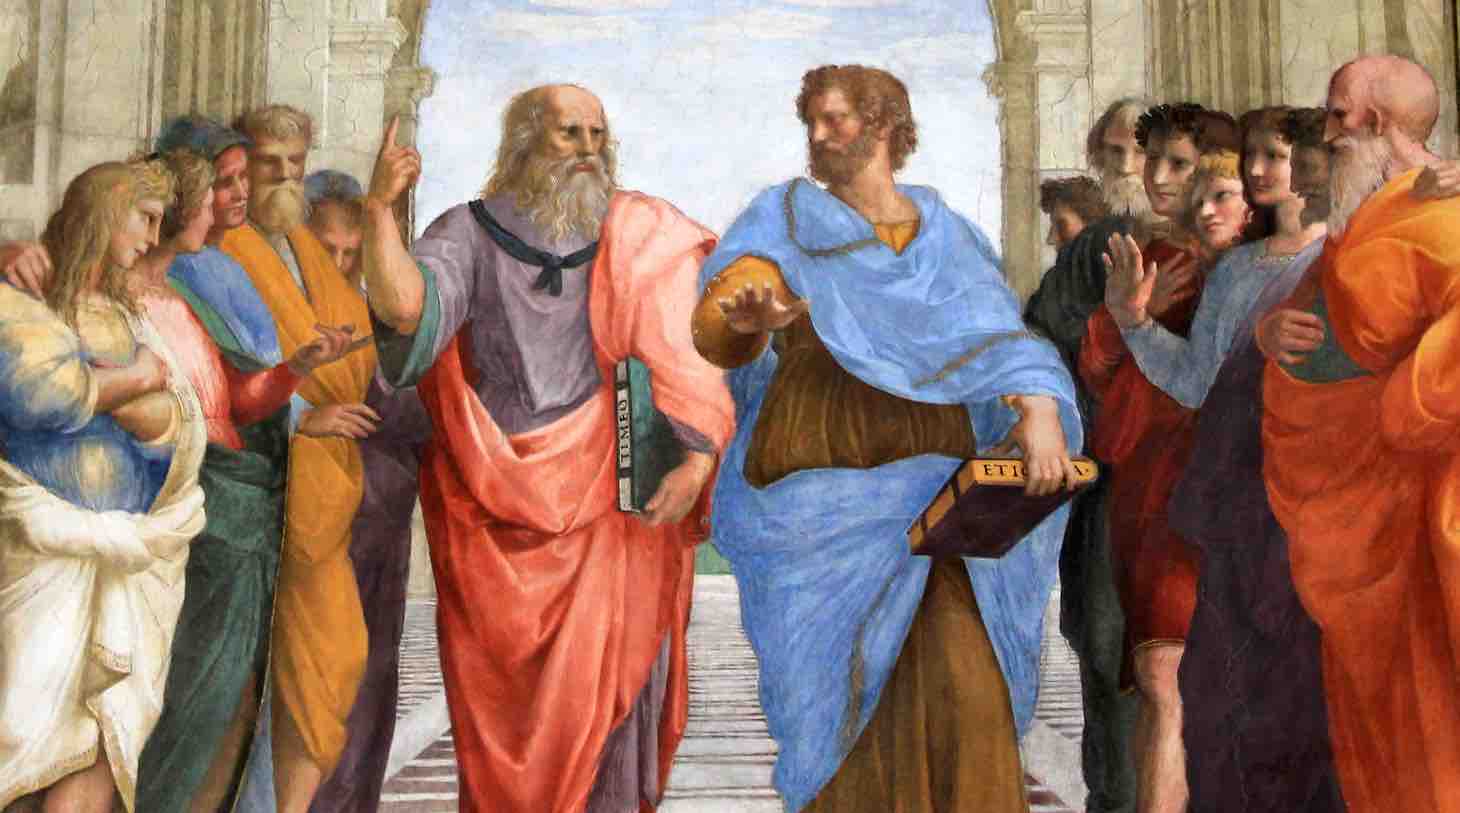 Ecole d'Athènes de Raphaël (détail): Platon montrant le domaine idéal du Ciel (mathématiques), Aristote s'appuyant sur les aspects concrets terrestres (expériences)